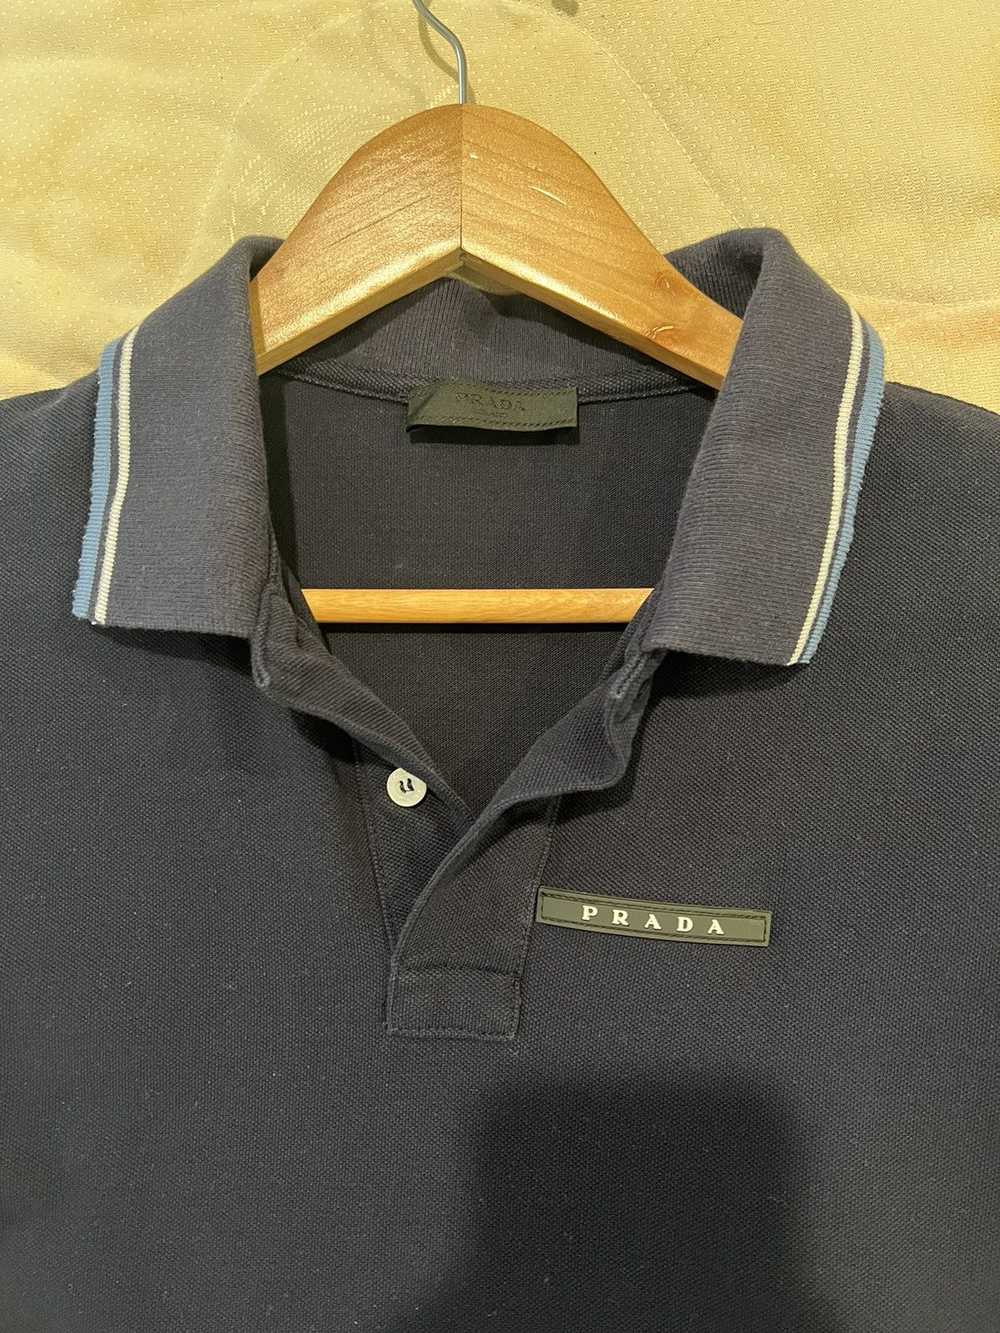 Prada Prada Polo Shirt - image 2